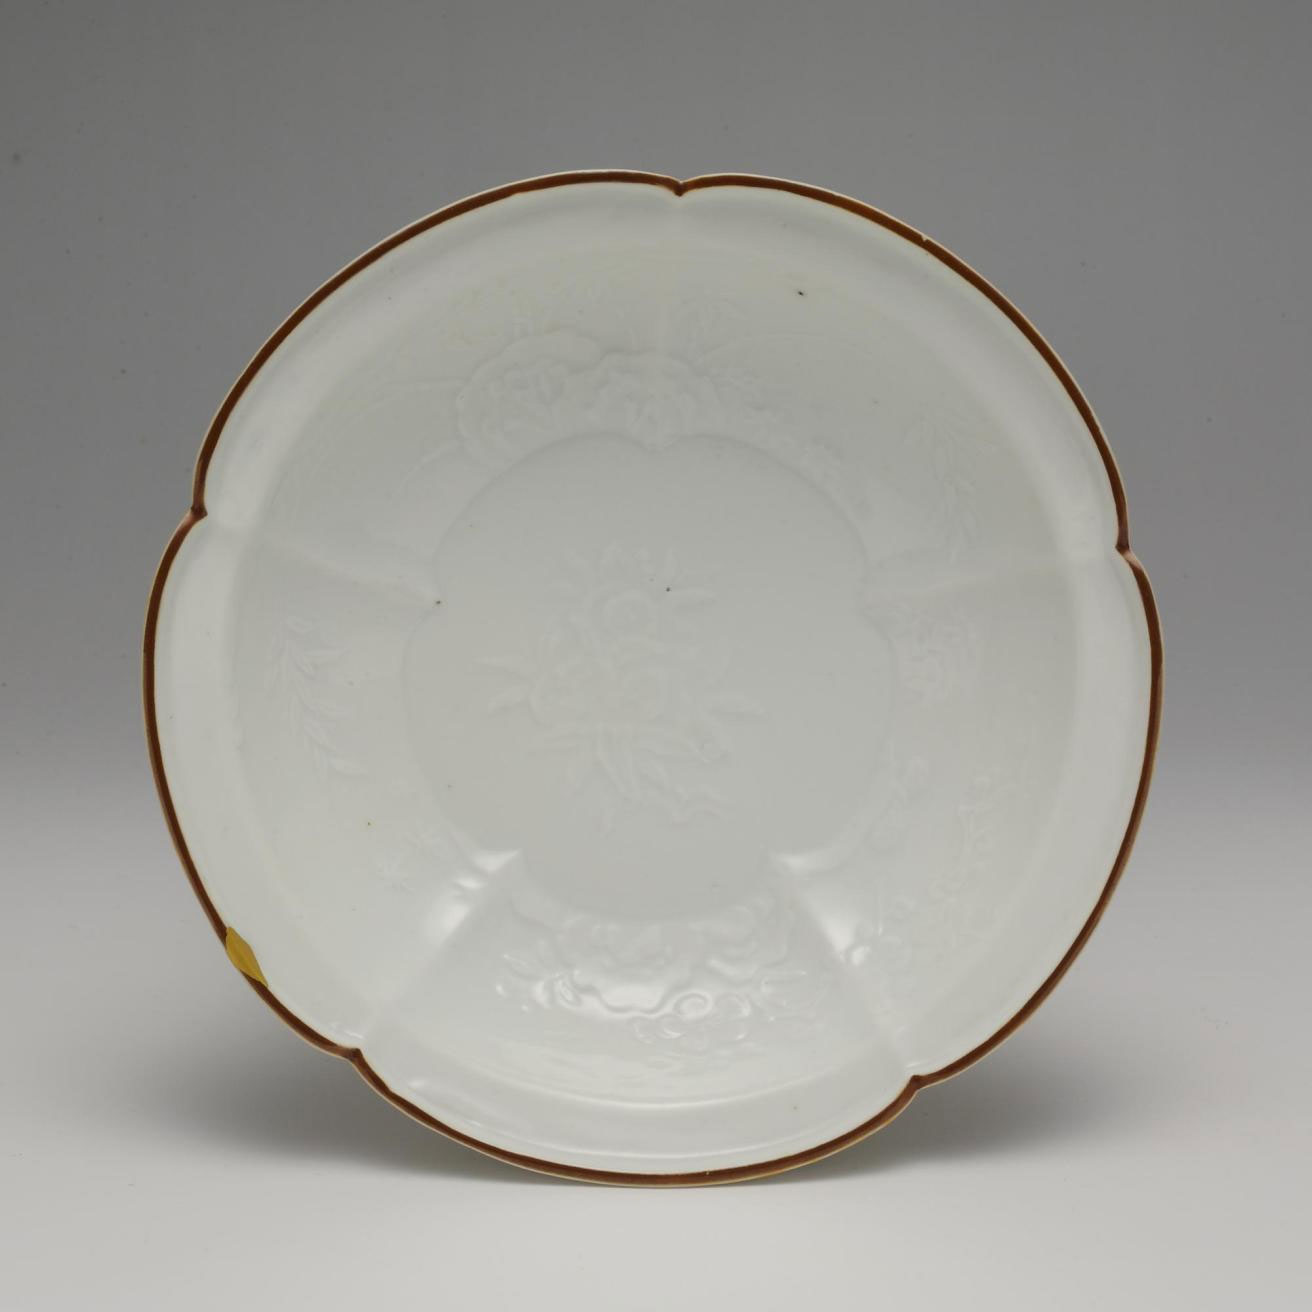 Moulded porcelain dish with brown rim, Kakiemon: Japan, c1700.